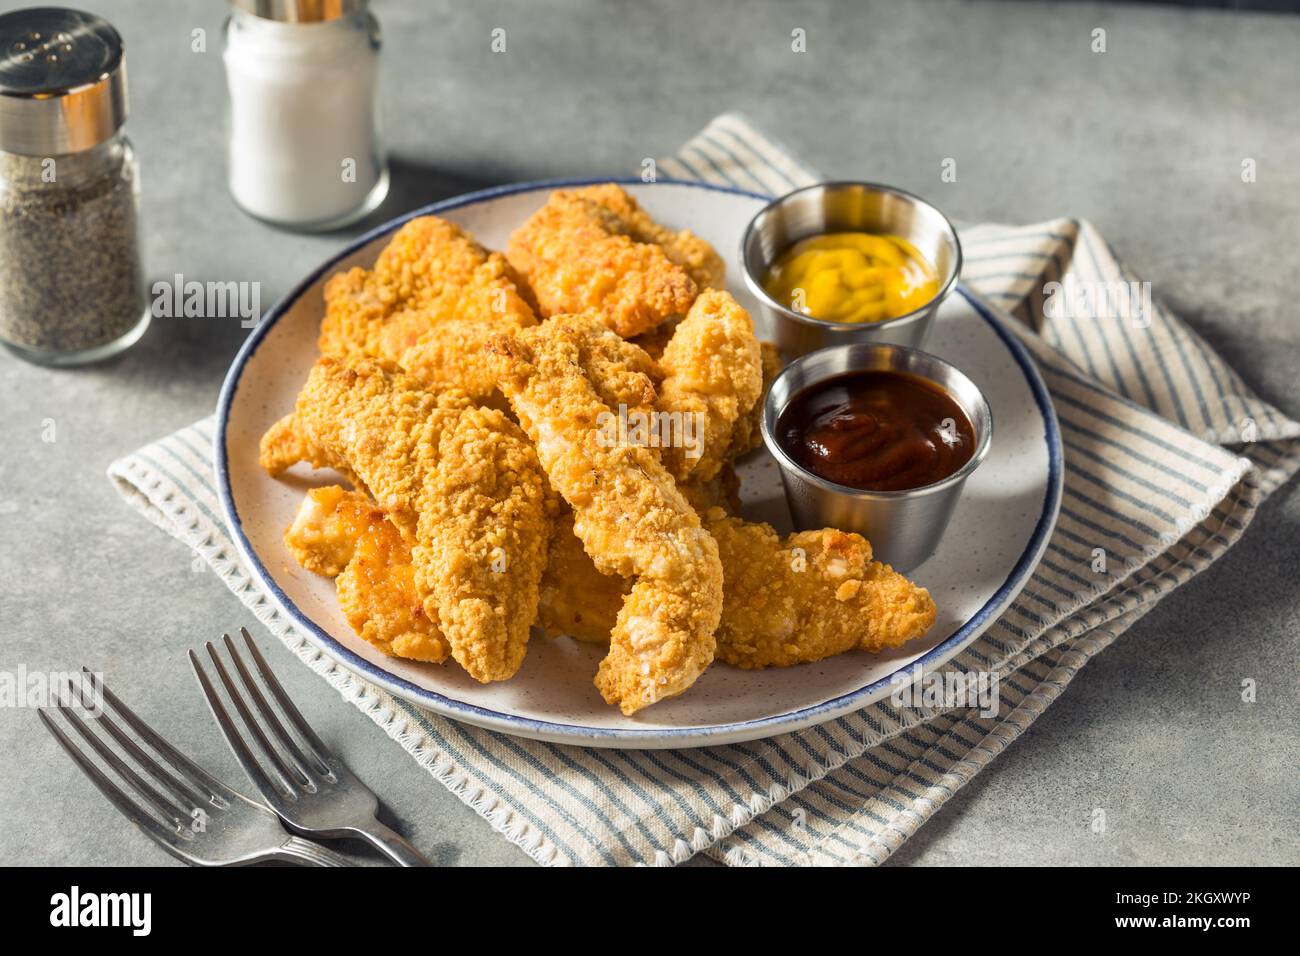 Strisce di pollo fritto con senape e barbecue fatte in casa Foto Stock